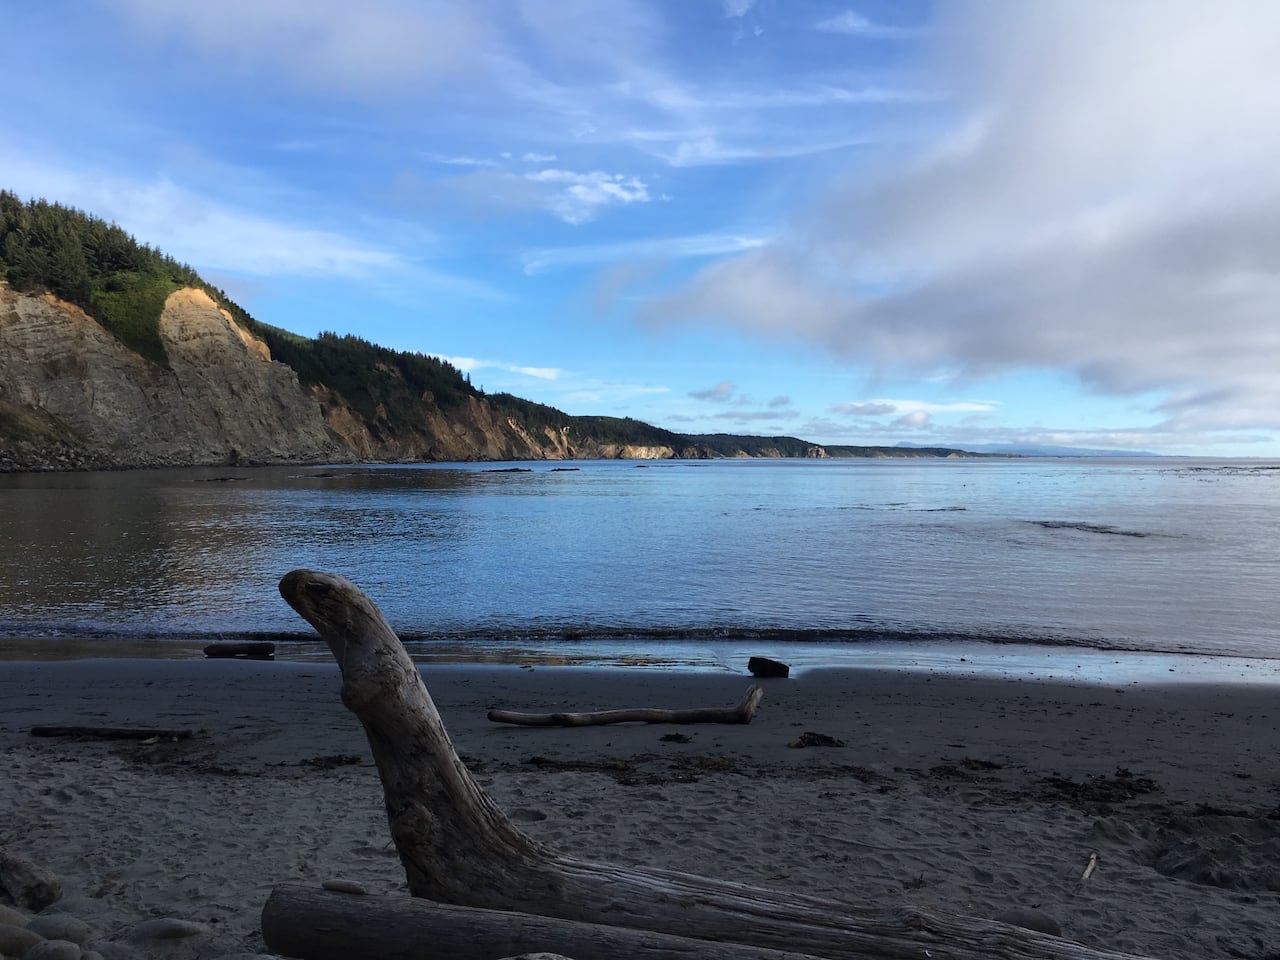 Una cala tranquila en la costa de Oregon. Hay un gran trozo de madera flotante en primer plano. El agua tranquila refleja un cielo azul con nubes de cola de yegua.